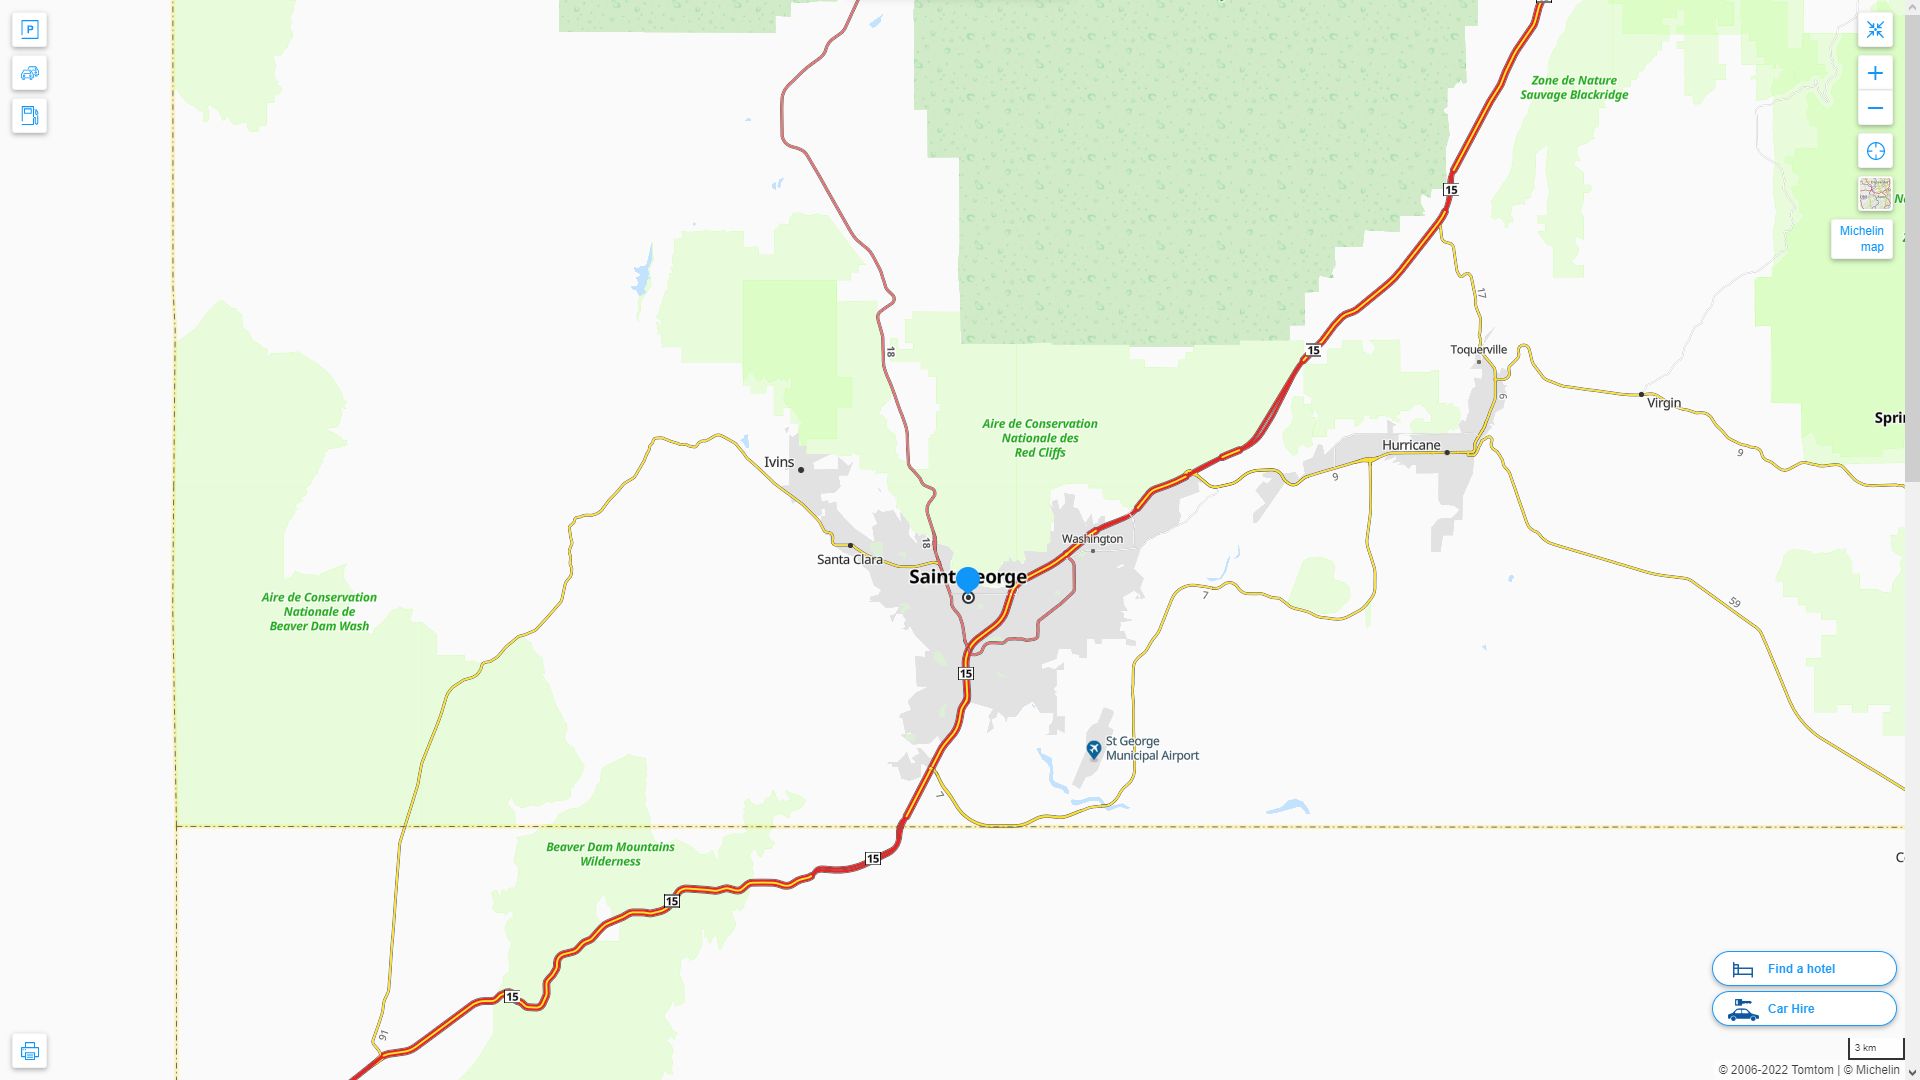 St. George Utah Highway and Road Map